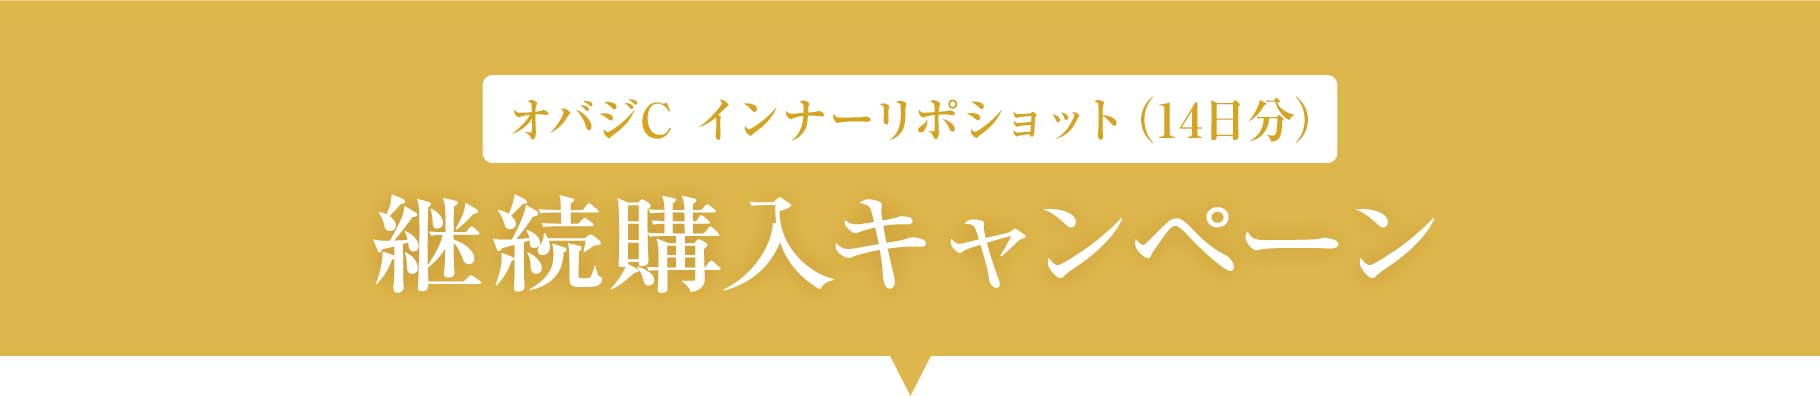 オバジC インナーリポショット(14日分)継続購入キャンペーン